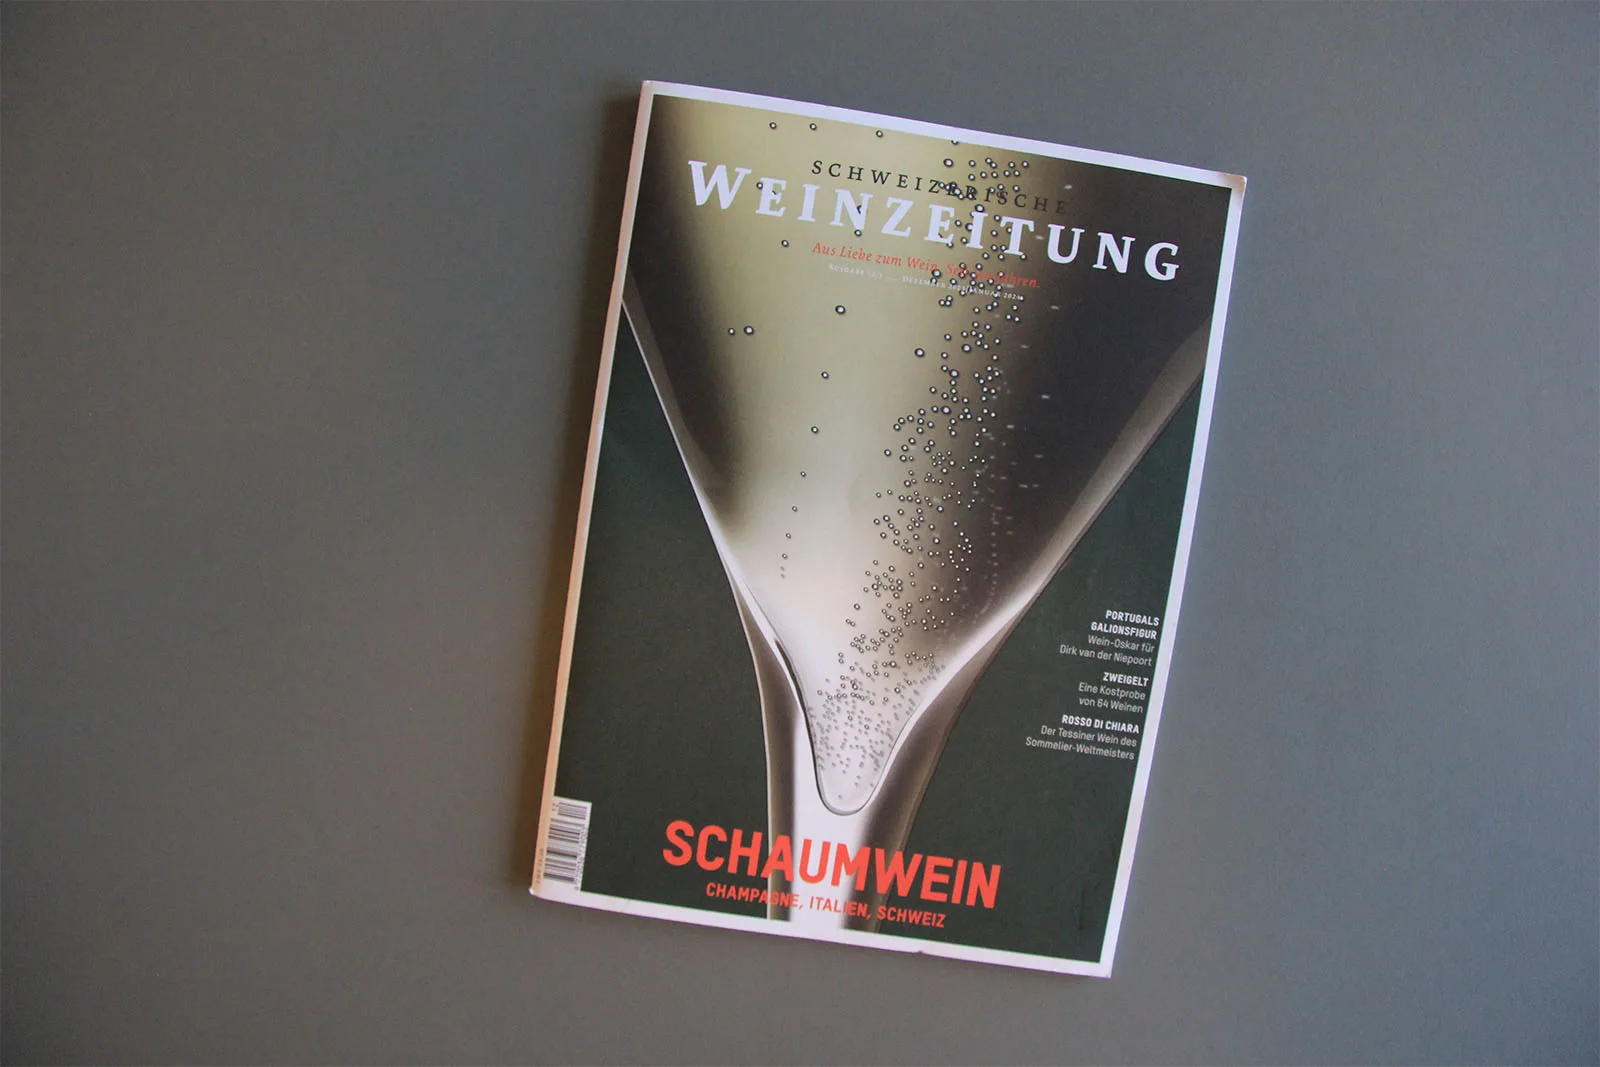 Top 10 of Schweizer Schaumwein in der Schweizerischen Weinzeitung - Weingut Hansruedi Adank